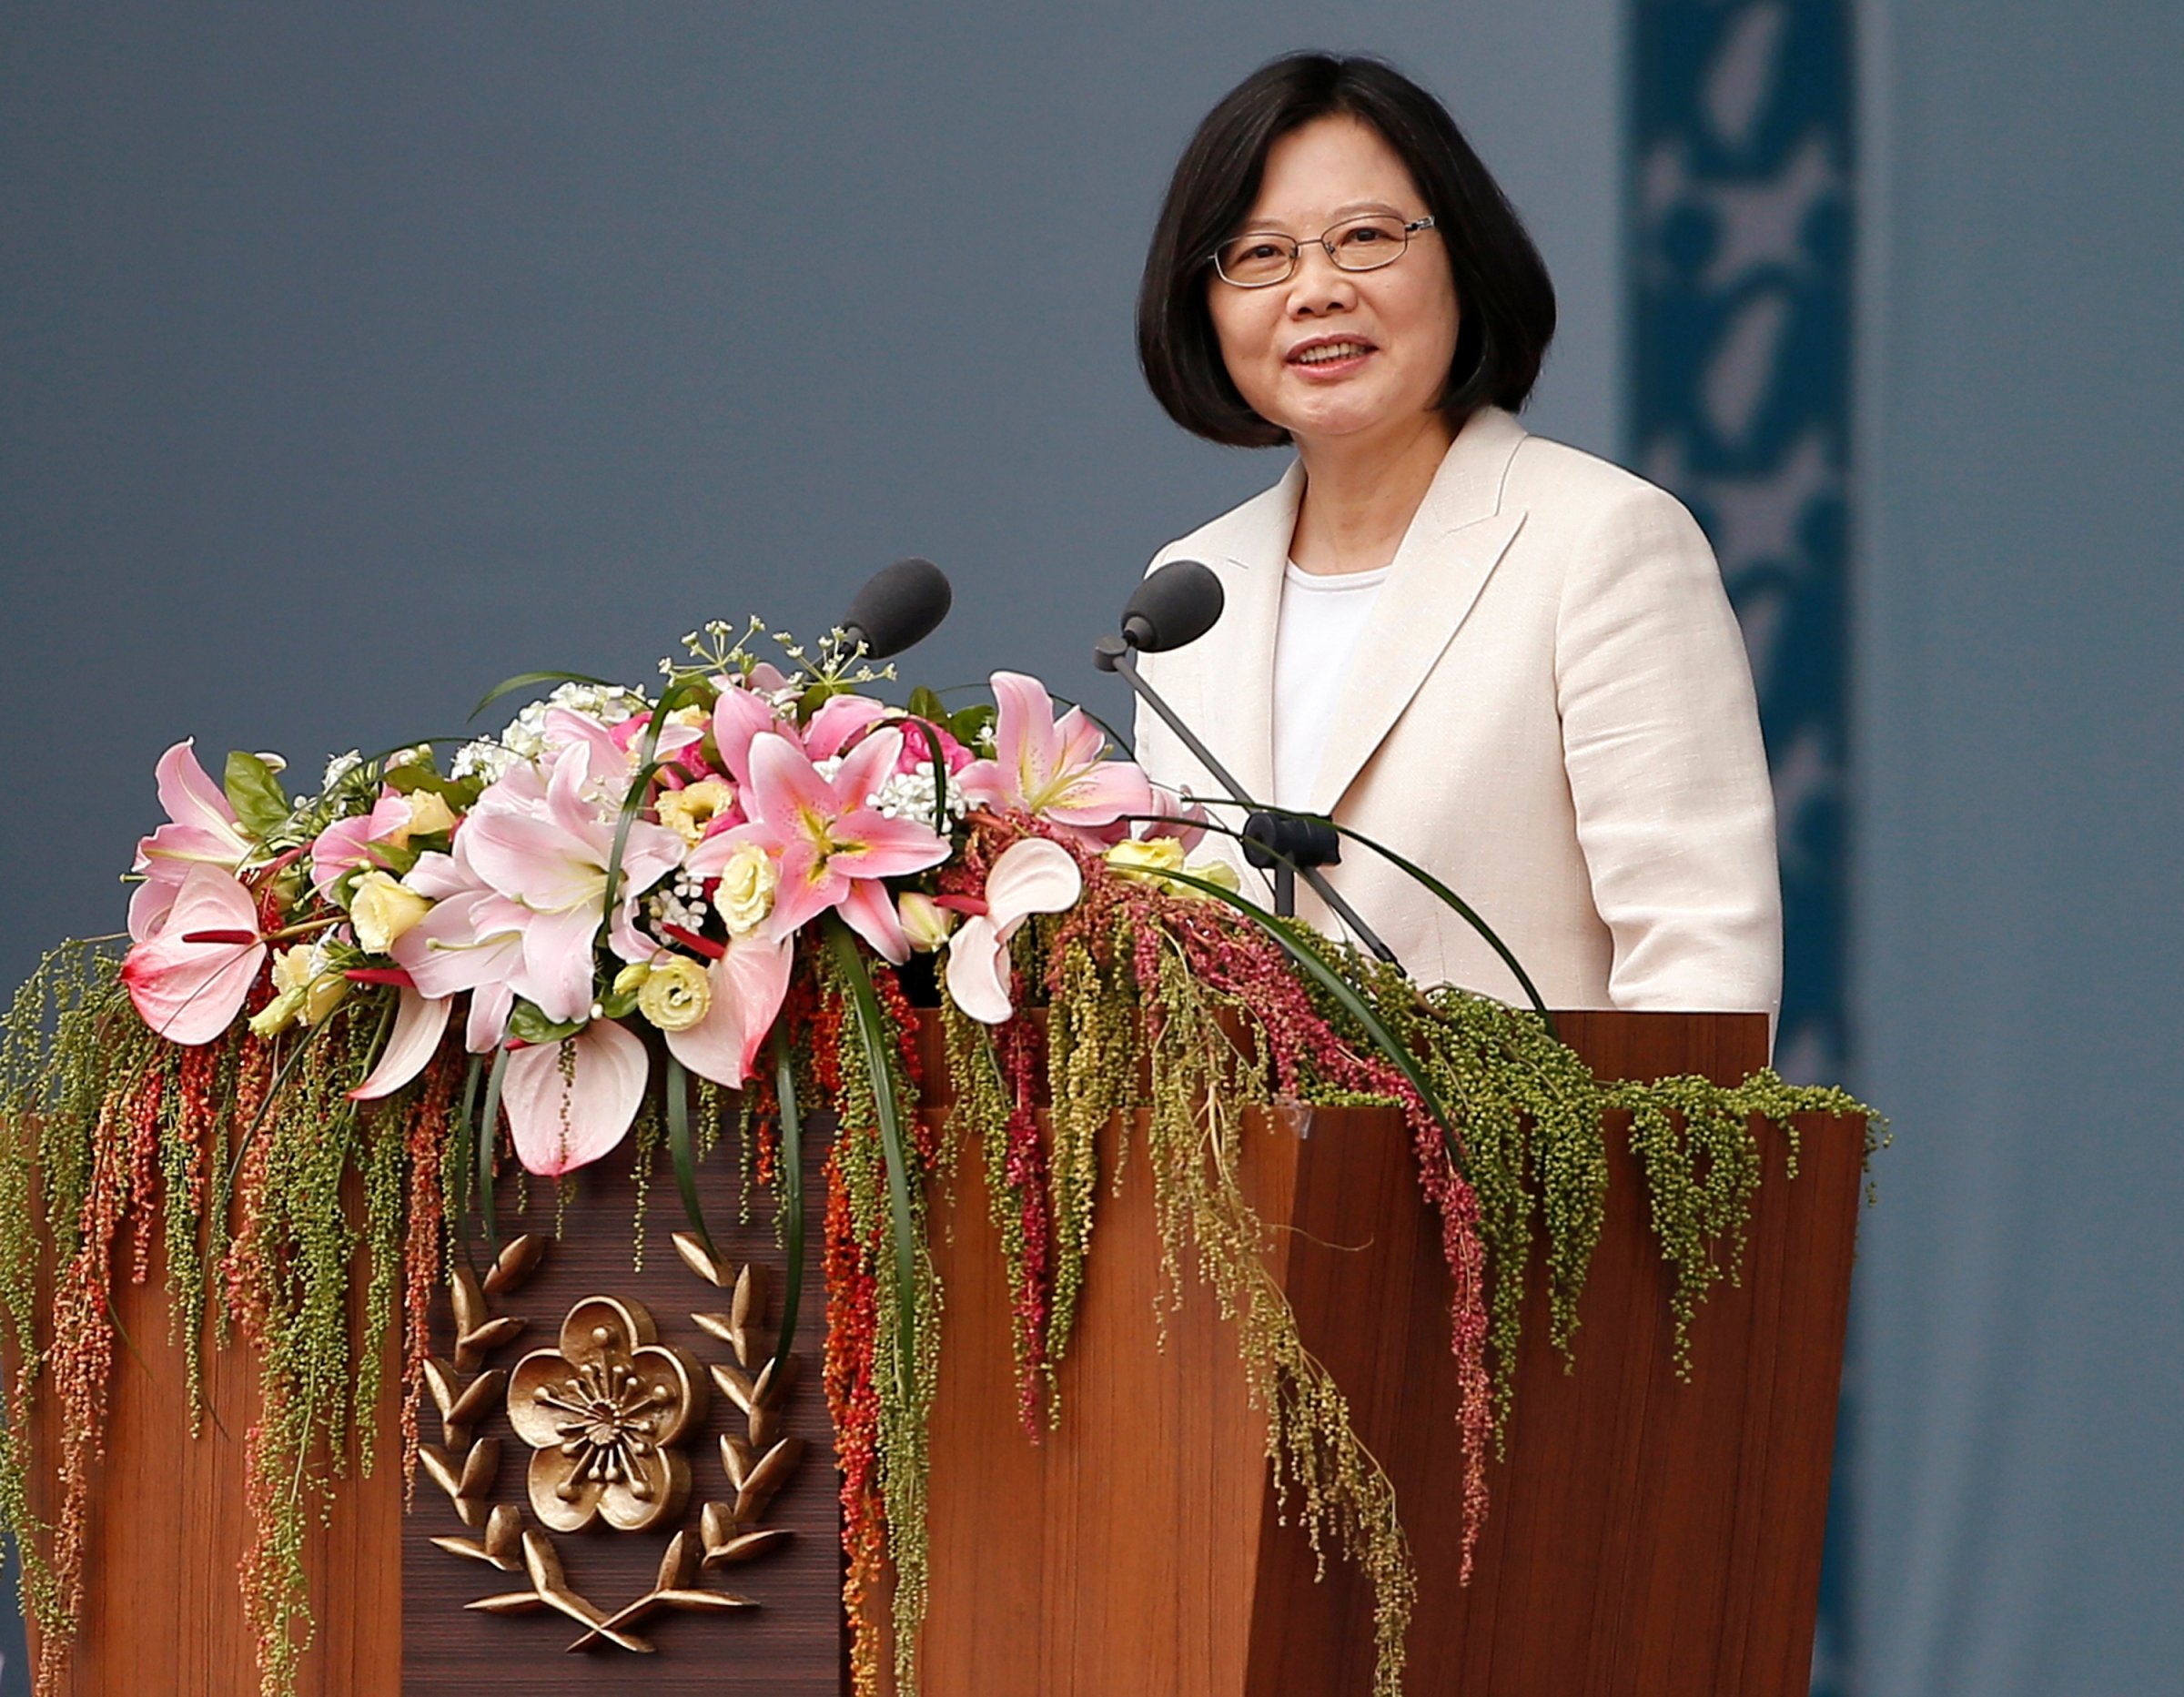 Taiwans President Tsai Ing-wen addresses during an inauguration ceremony in Taipei